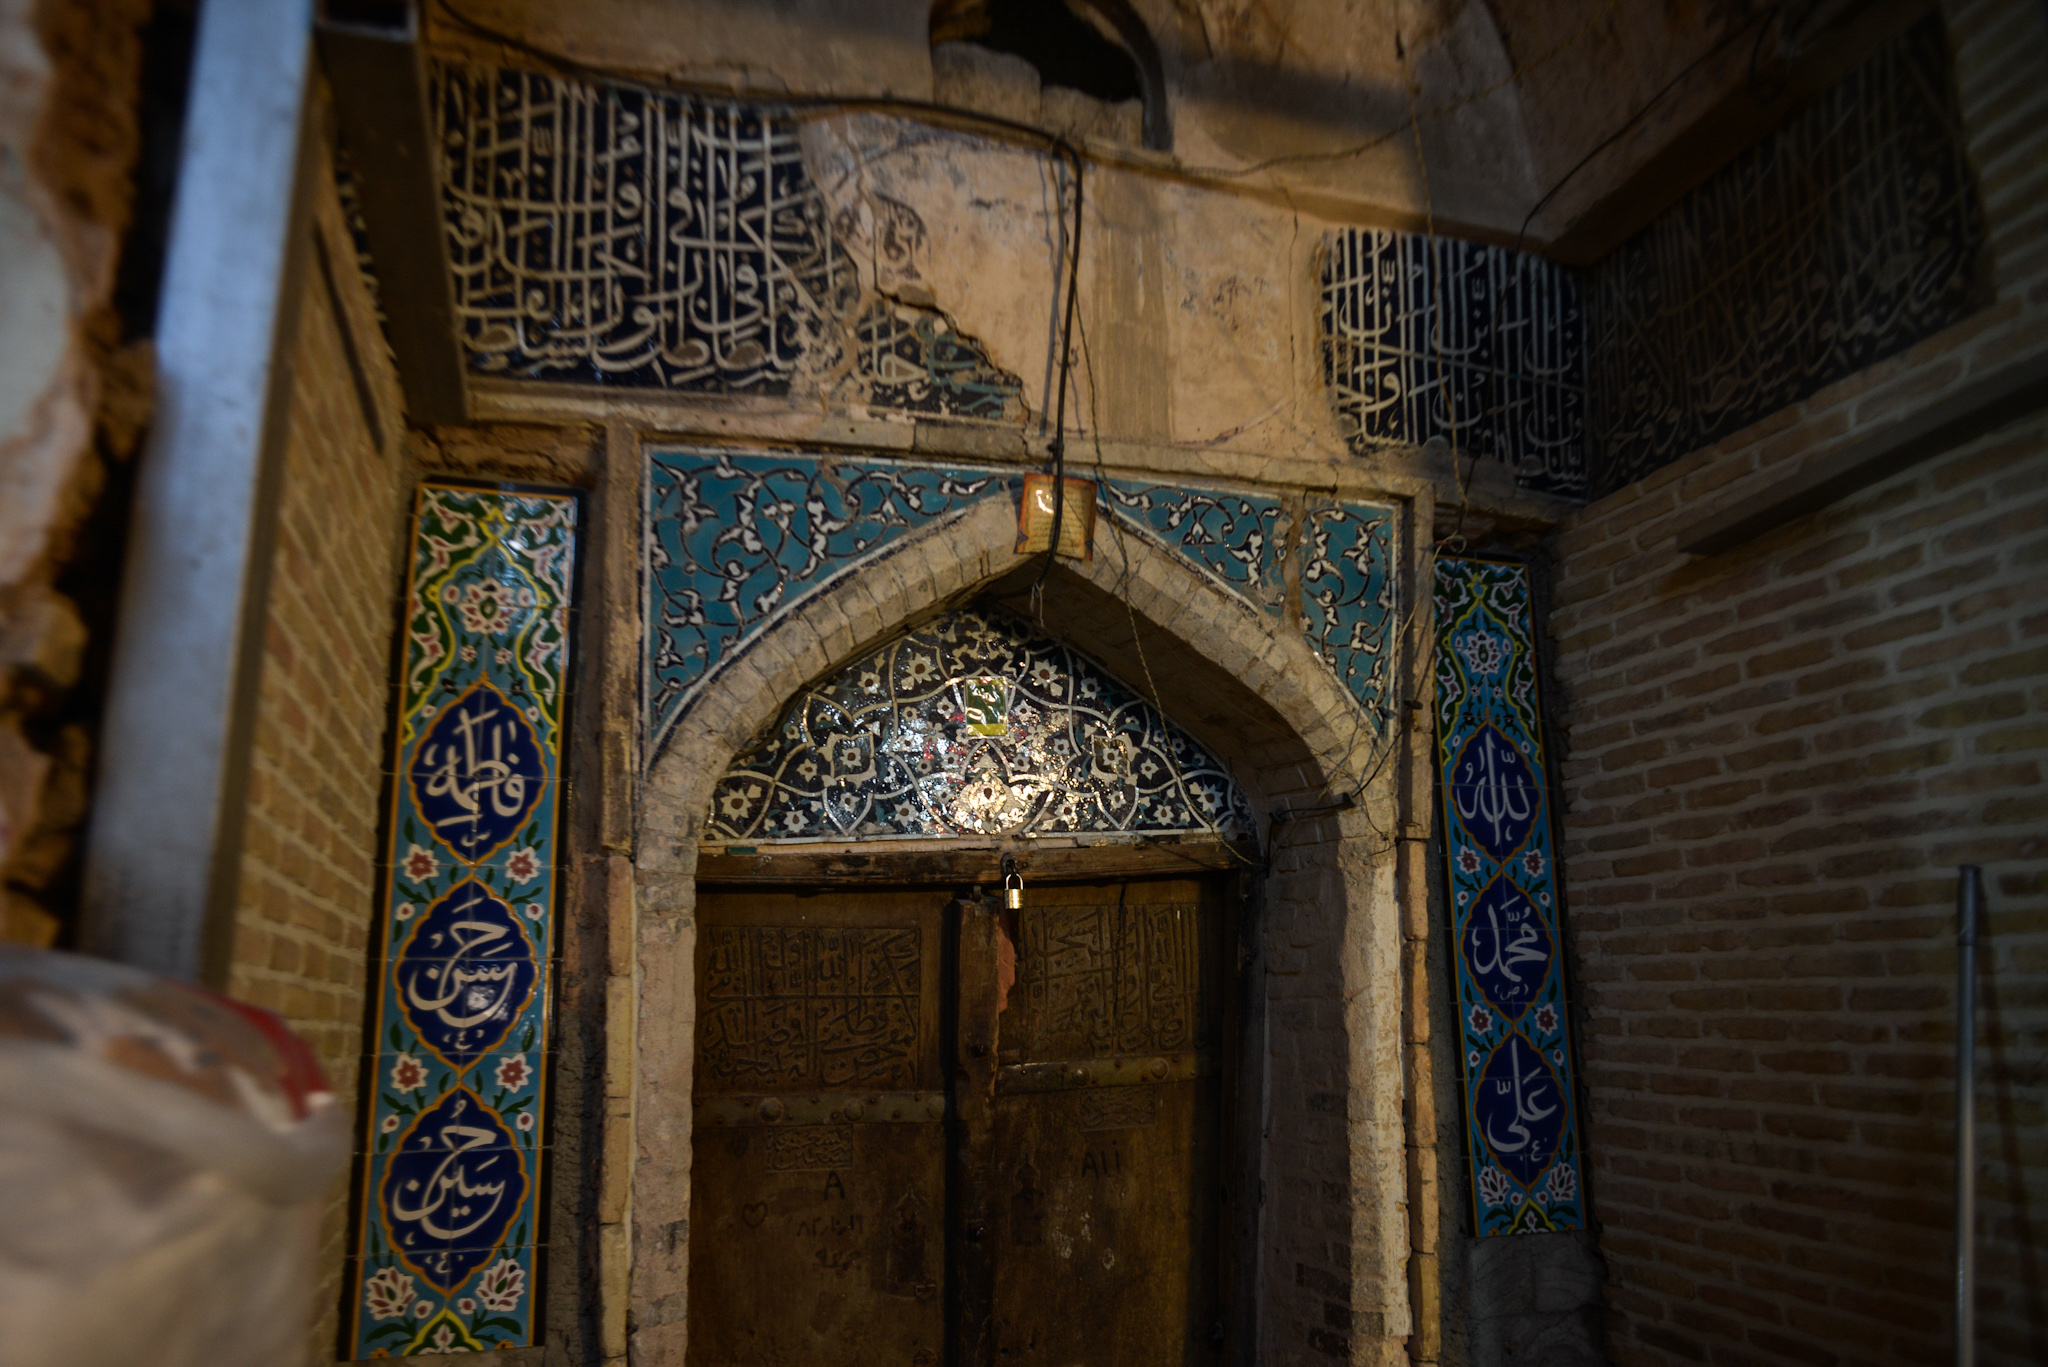 Mistfahan